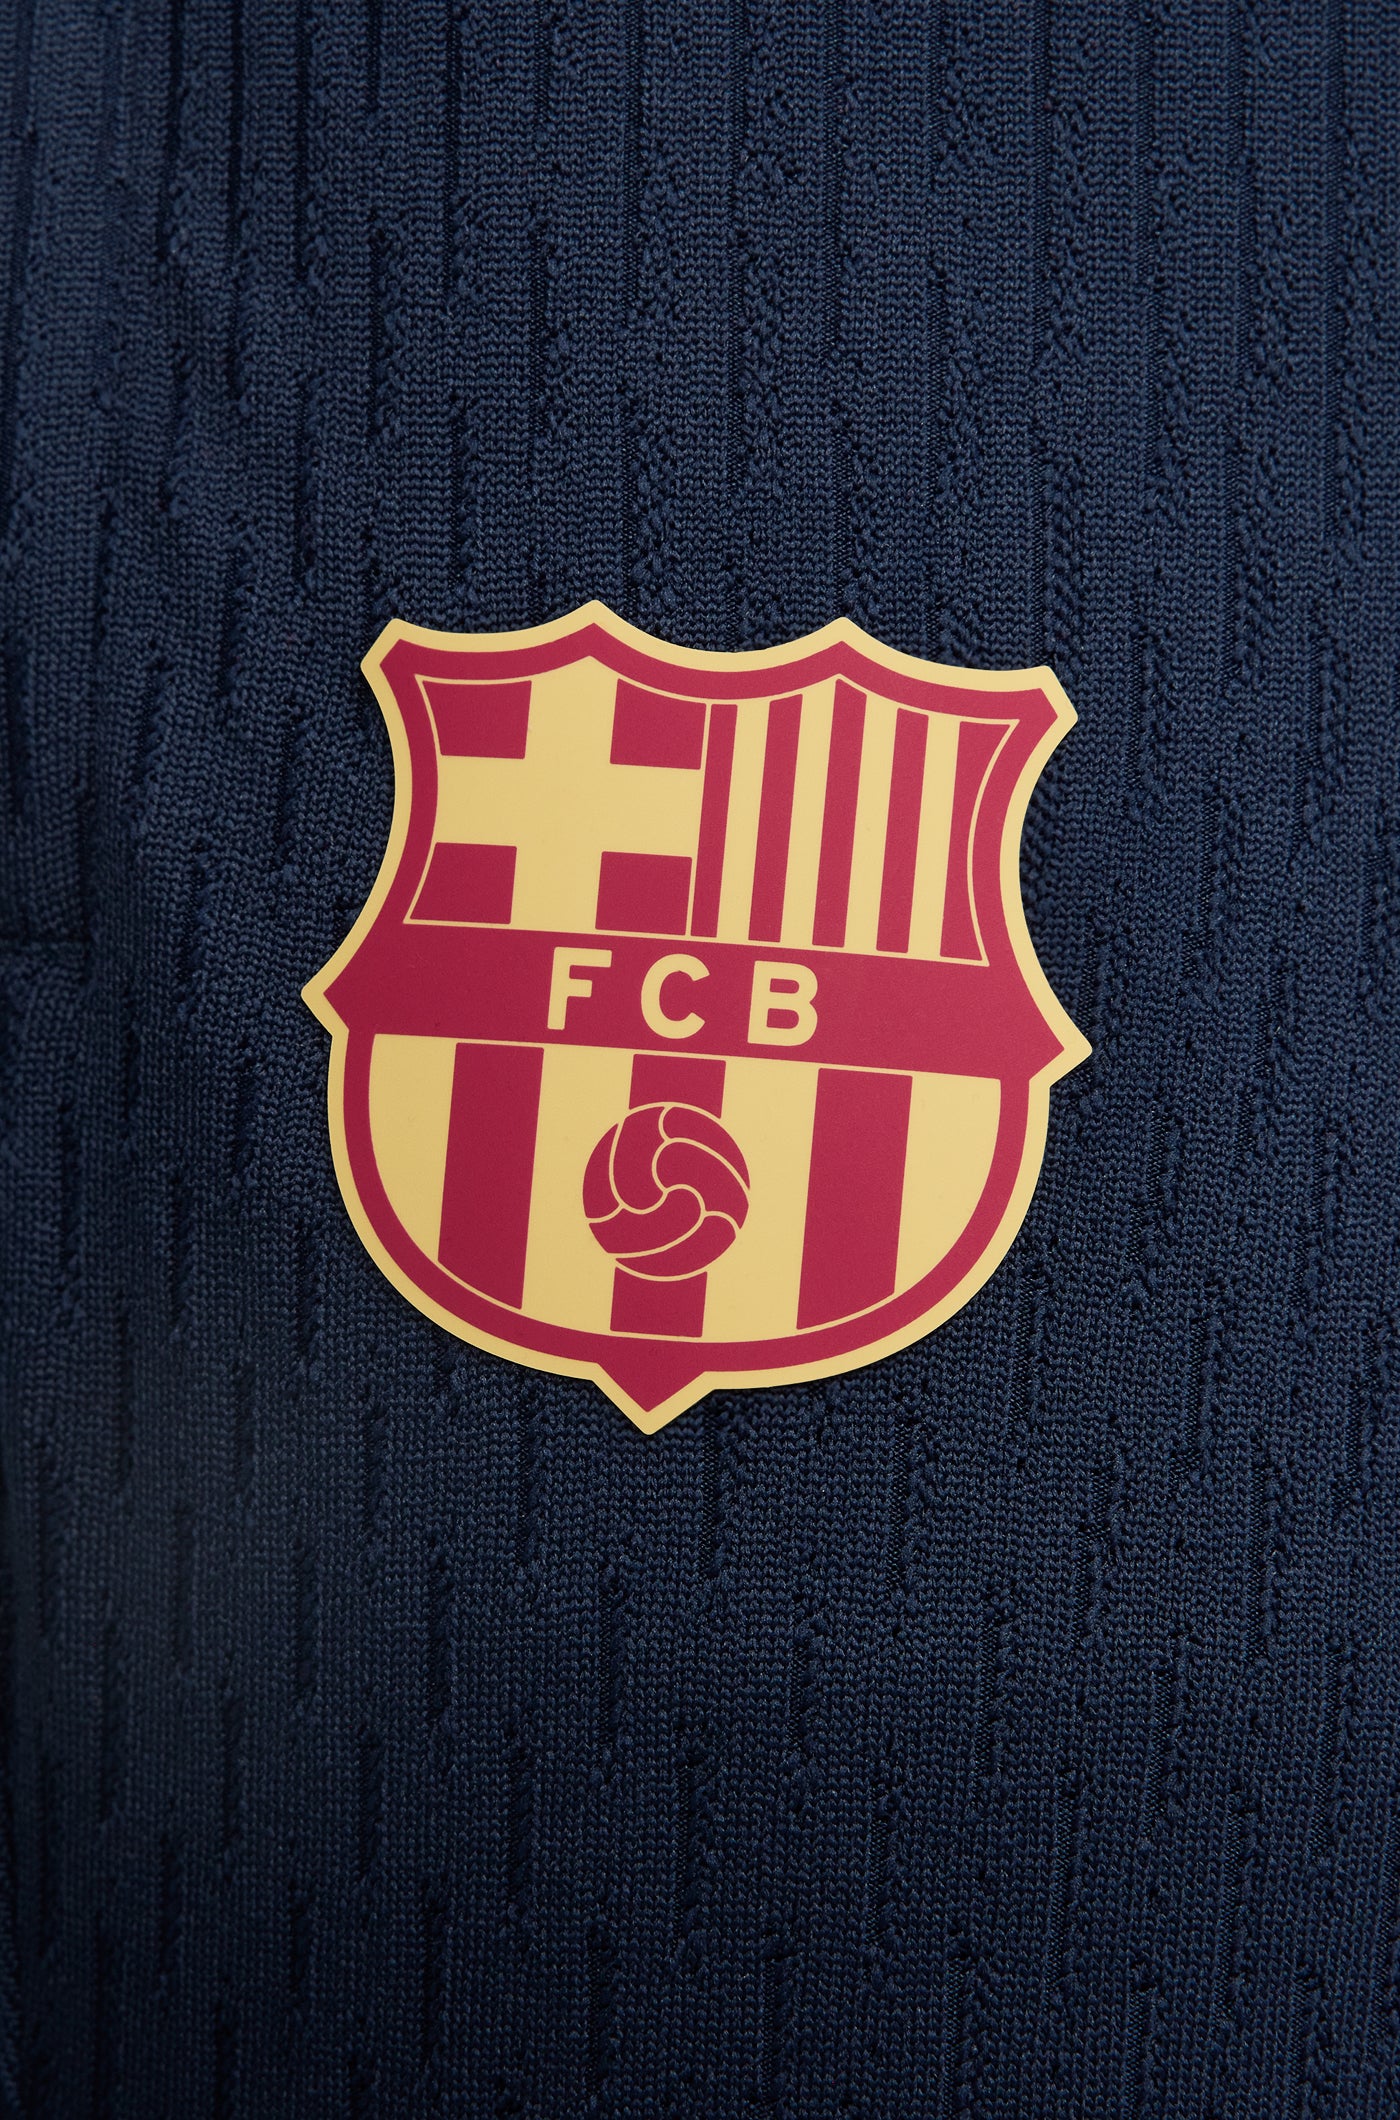 Pantalons d'entrenament obsidiana FC Barcelona 23/24 - Edició Jugador